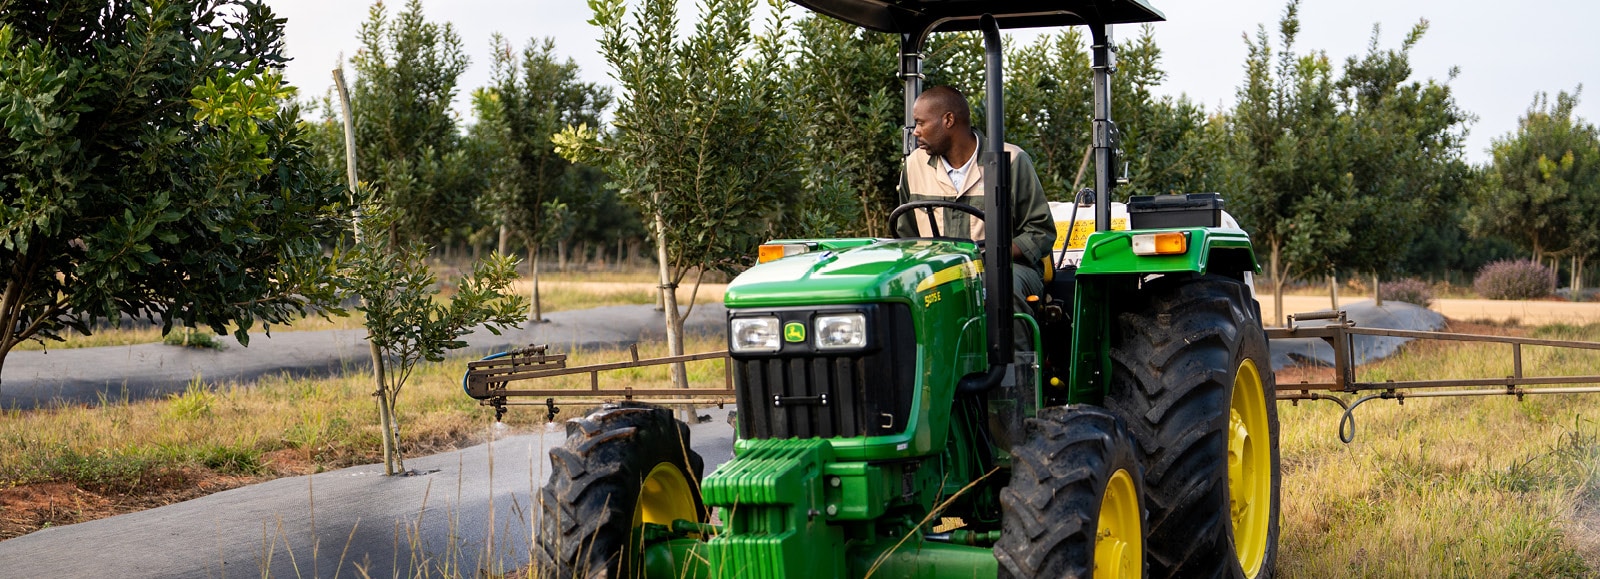 John Deere row-crop tractor